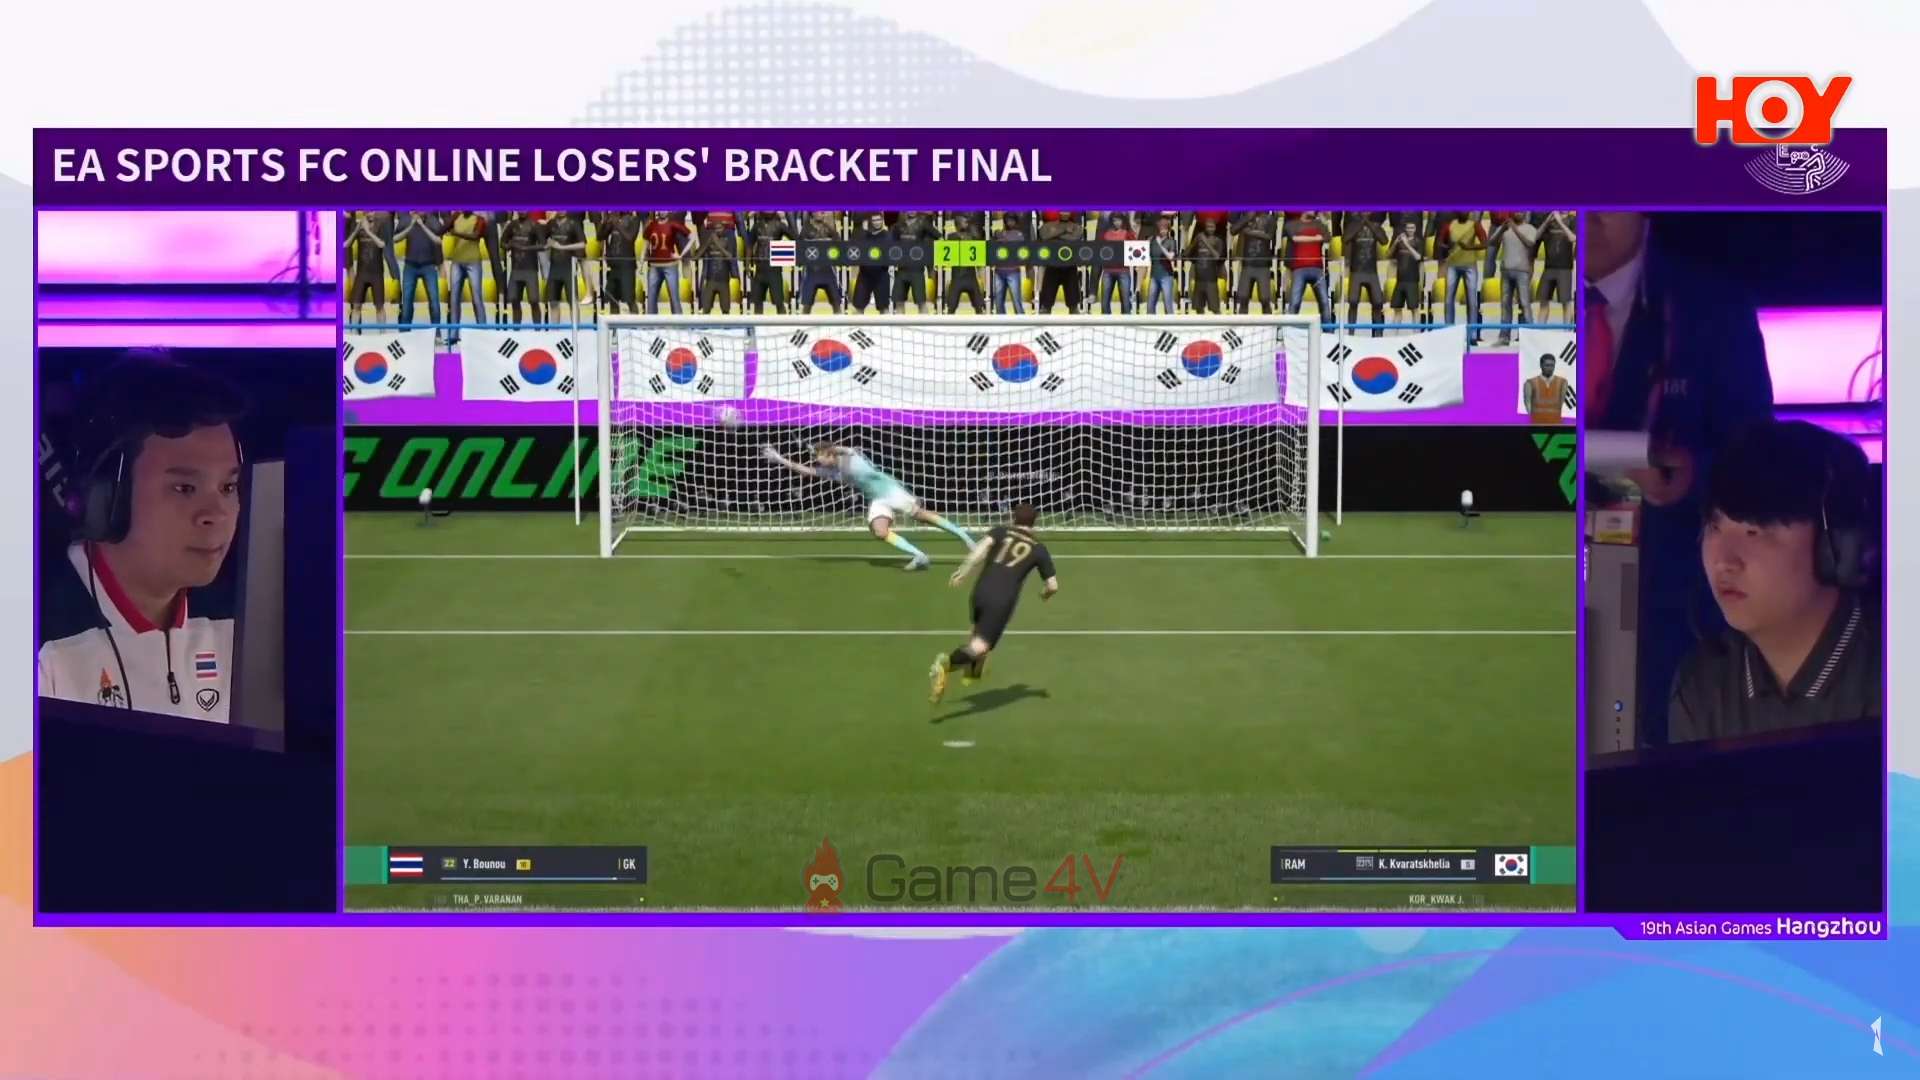 Tuyển thủ Hàn Quốc giành chiến thắng trong loạt đá luân lưu.